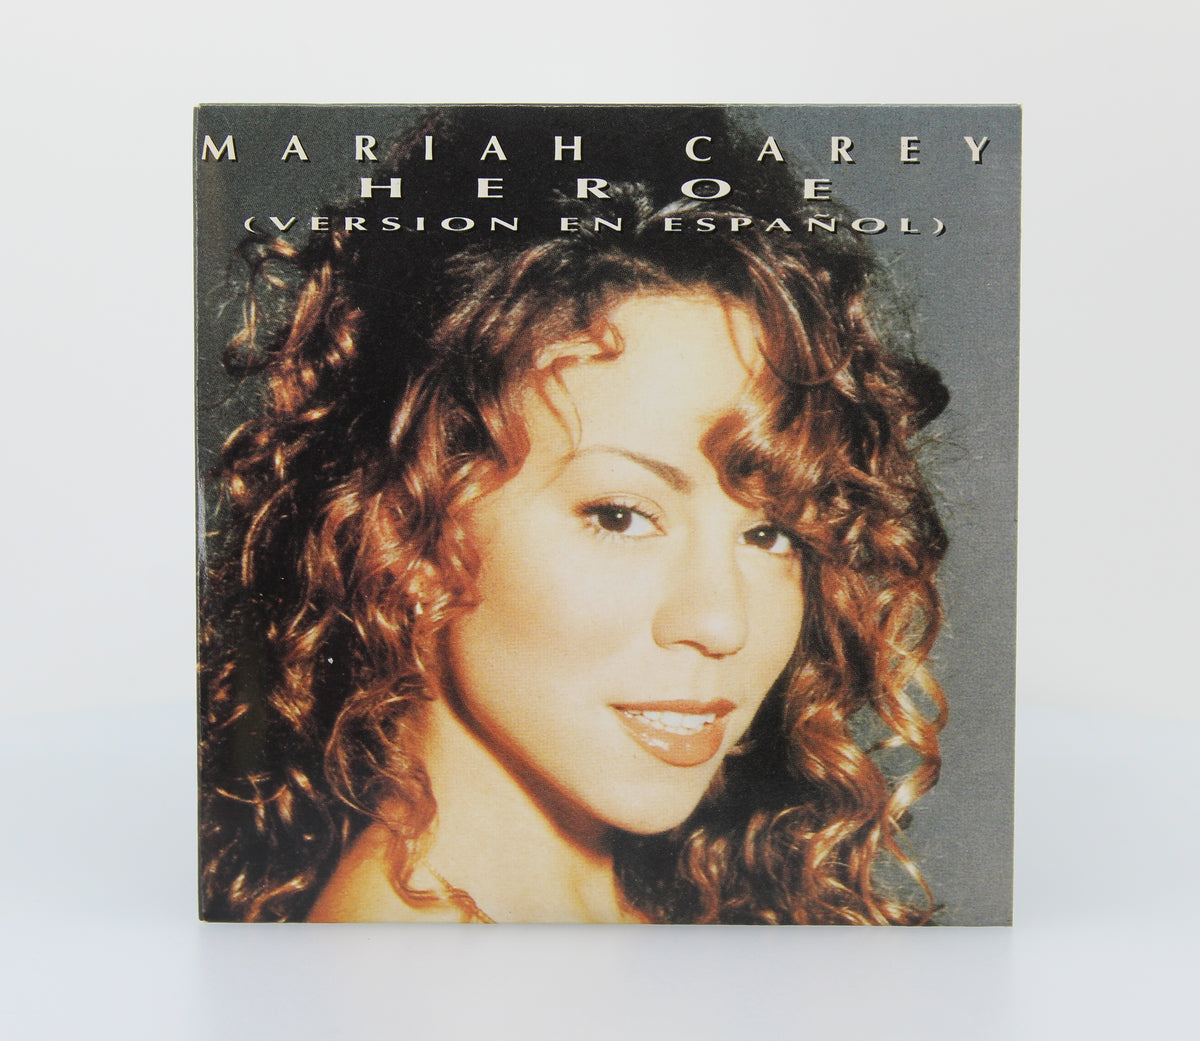 Mariah Carey – Heroe (Version En Español), CD Single, Spain 1995 (CD 615)